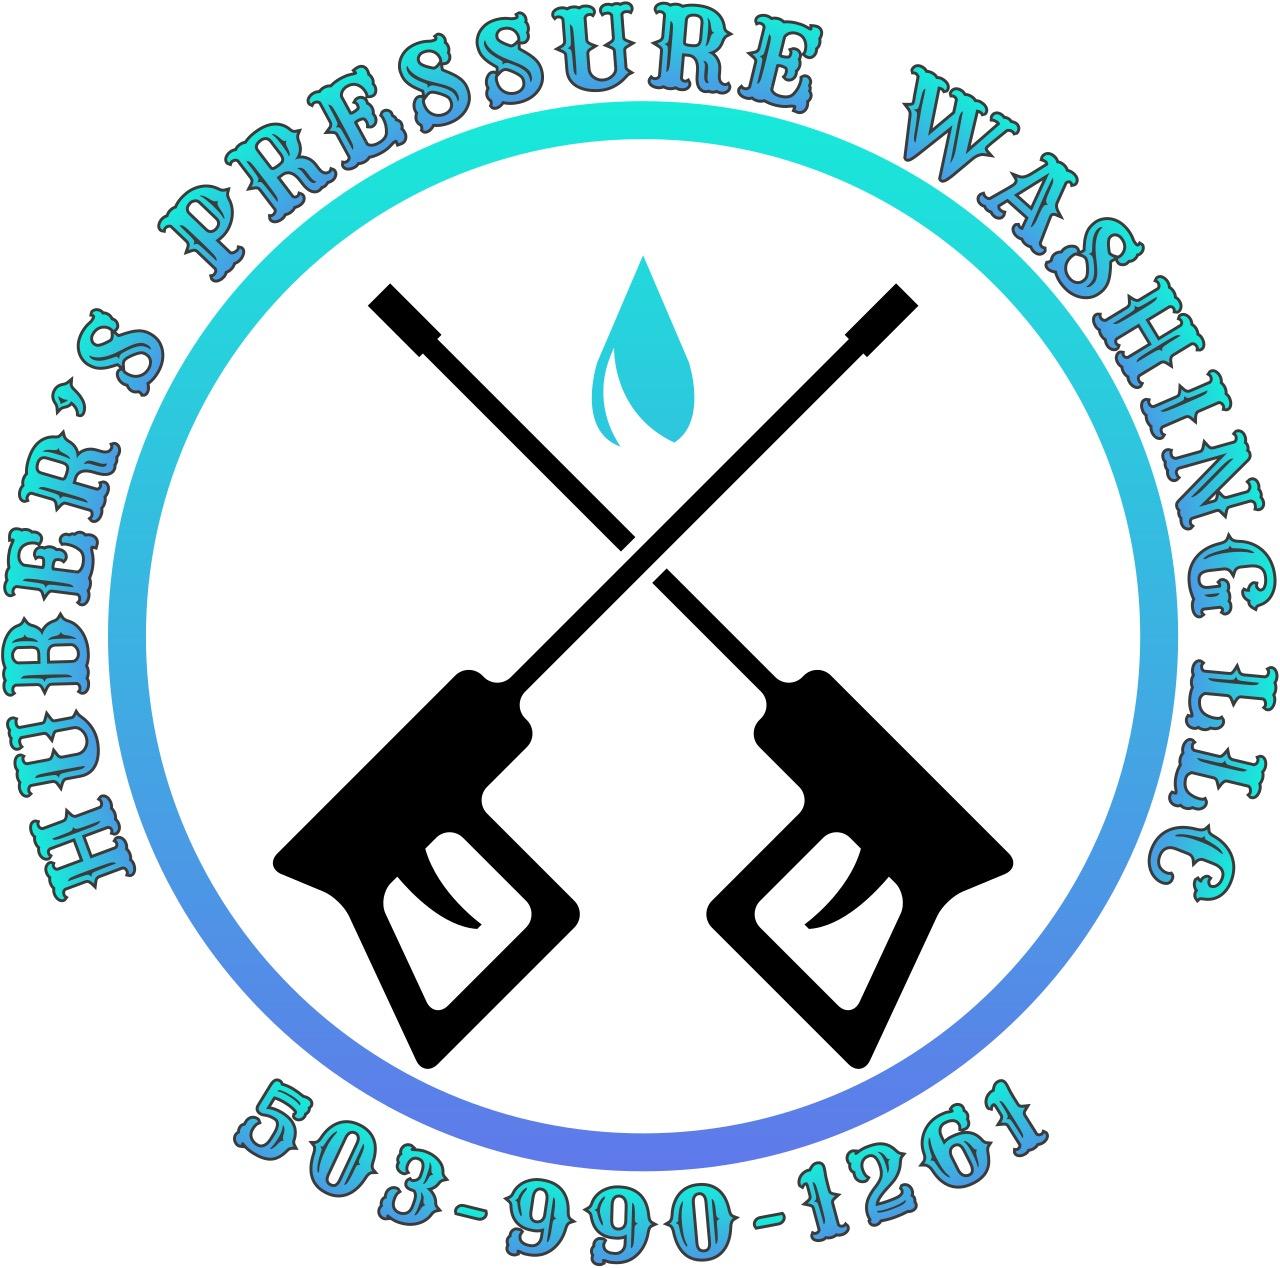 Huber's Pressure Washing, LLC Logo